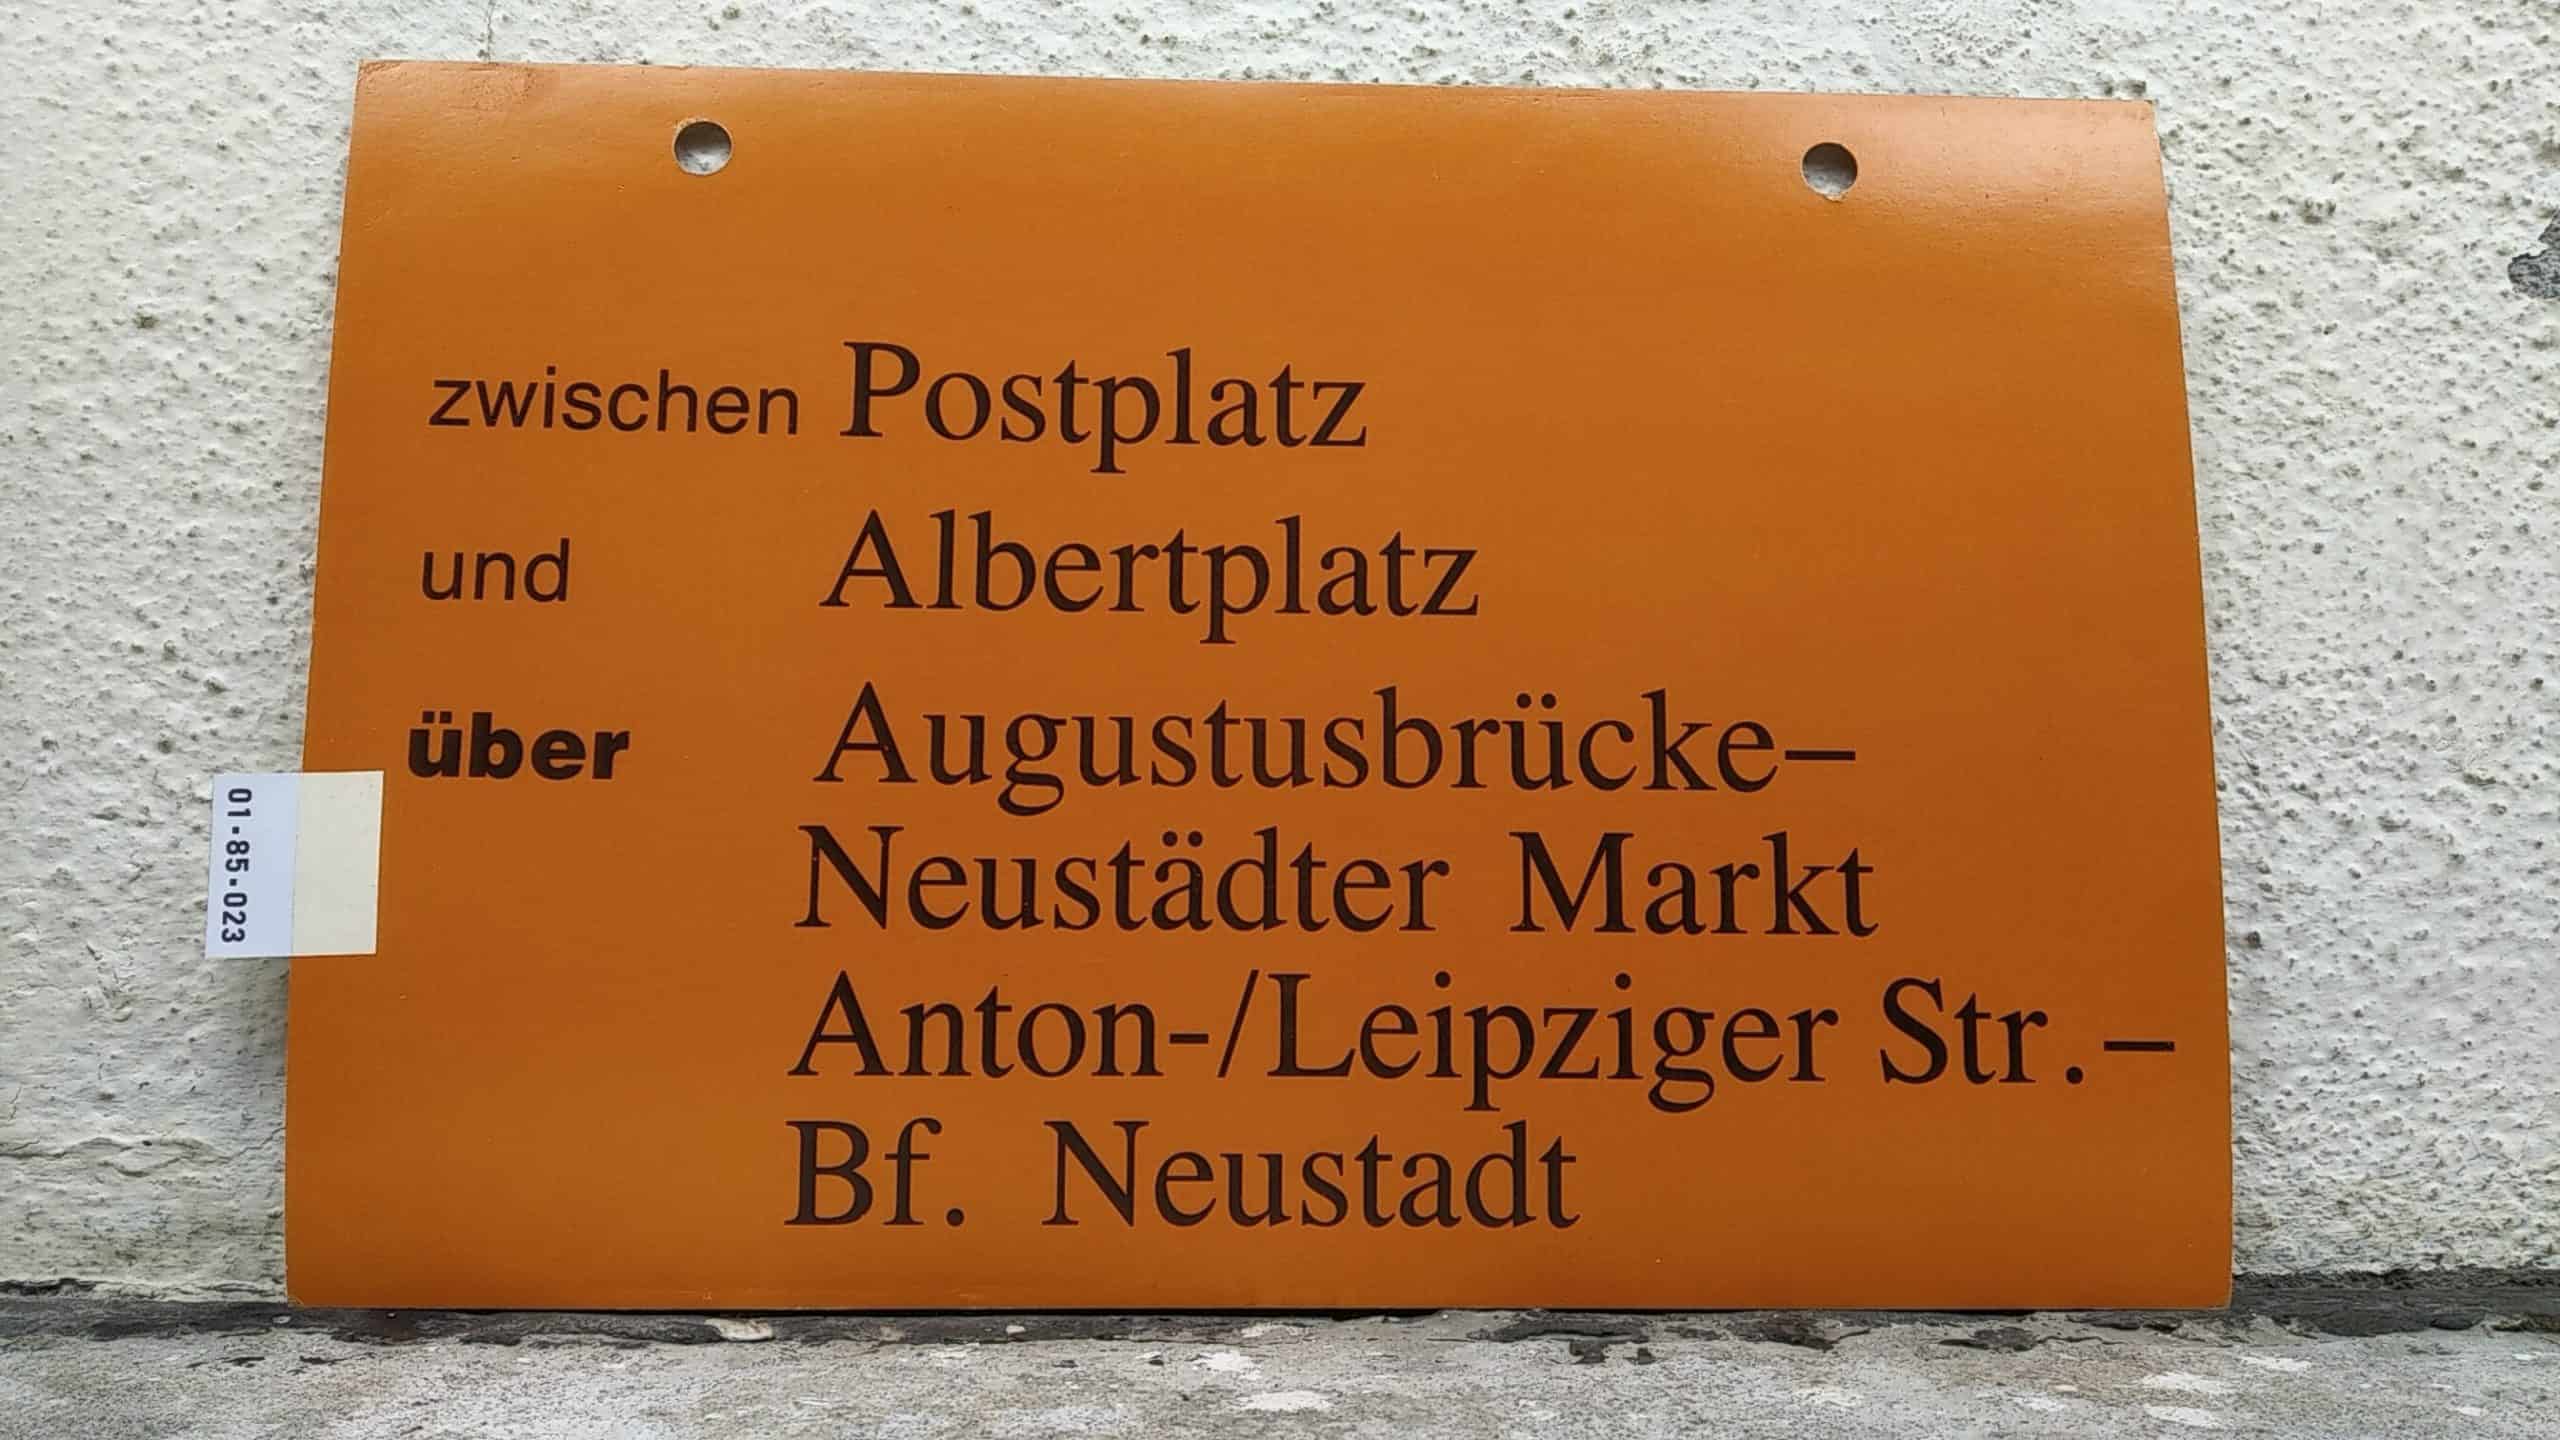 Ein seltenes Straßenbahn-Umleitungsschild aus Dresden: zwischen Postplatz und Albertplatz über Augustusbrücke- Neustädter Markt Anton-/Leipziger Str.- Bf. Neustadt